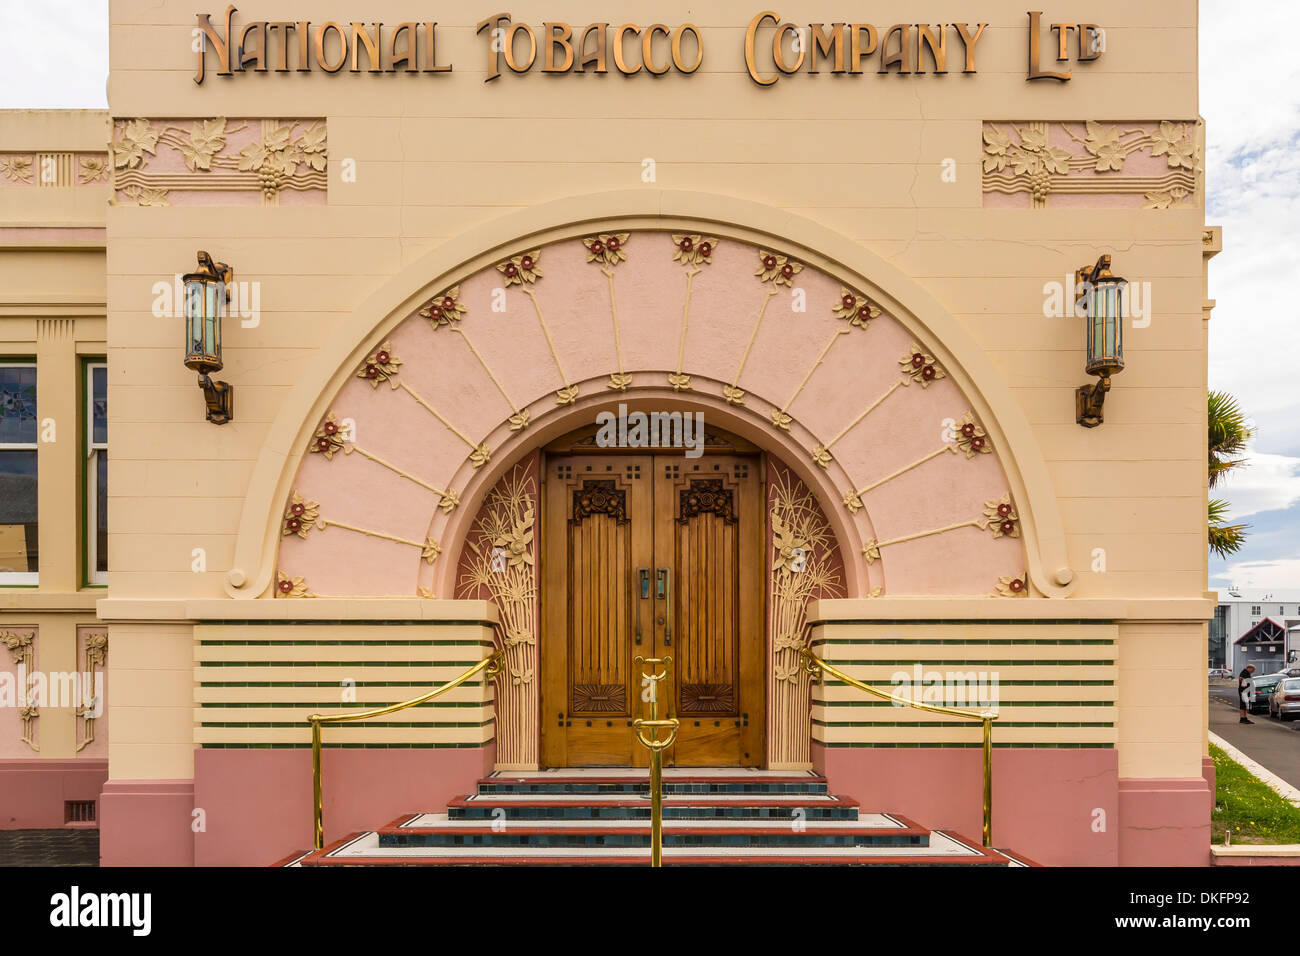 Die 1930 Art-Deco-Stil National Tobacco Company Gebäude in Napier, North Island, Neuseeland, Pazifik Stockfoto